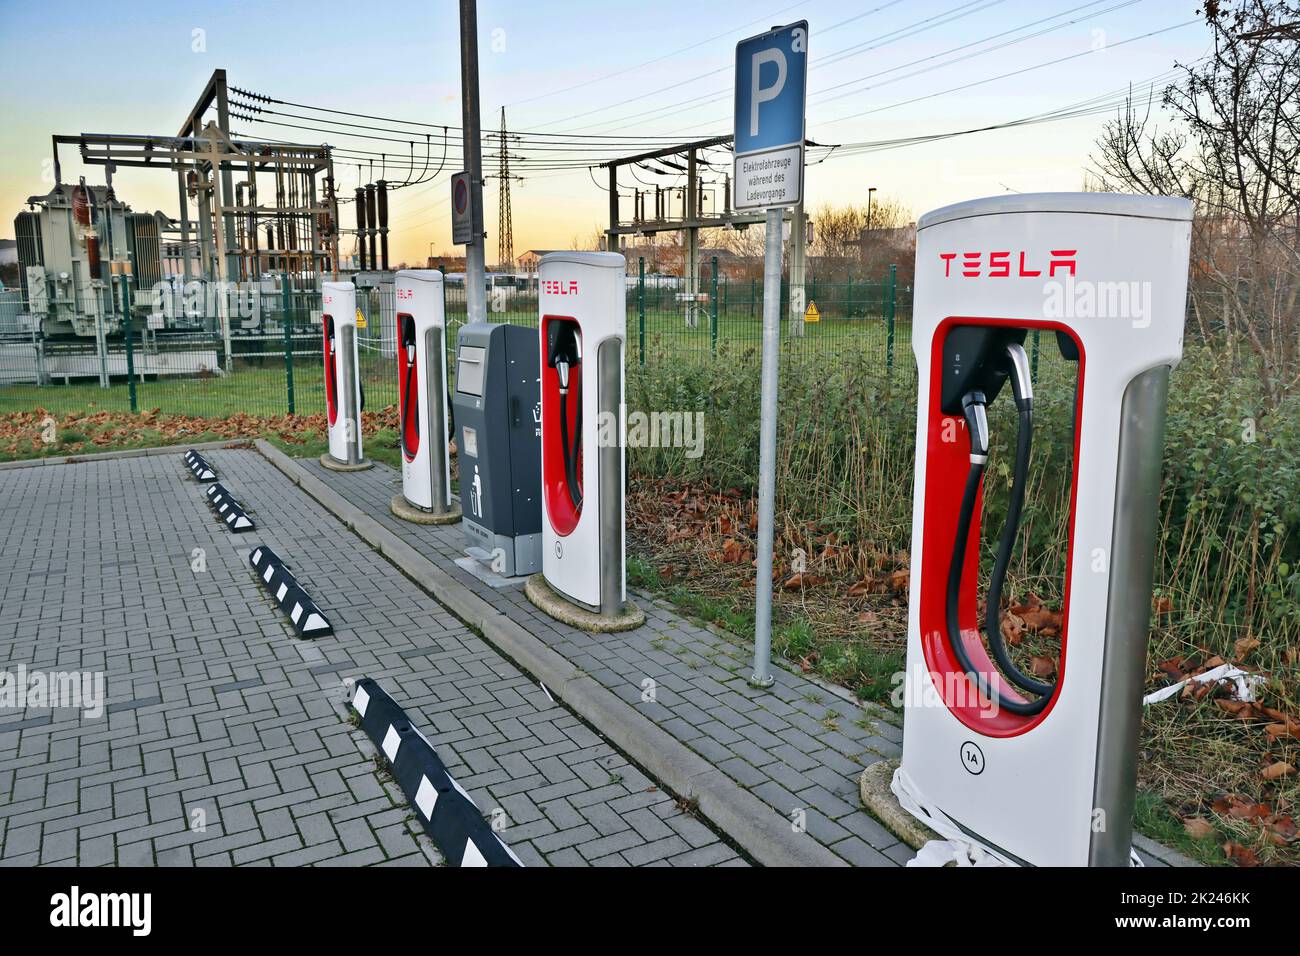 Testla Schnellladessation Supercharger neben einem Umspannwerk, Nordrhein-Westfalen, Deutschland, Erftstadt-Lechenich Foto Stock